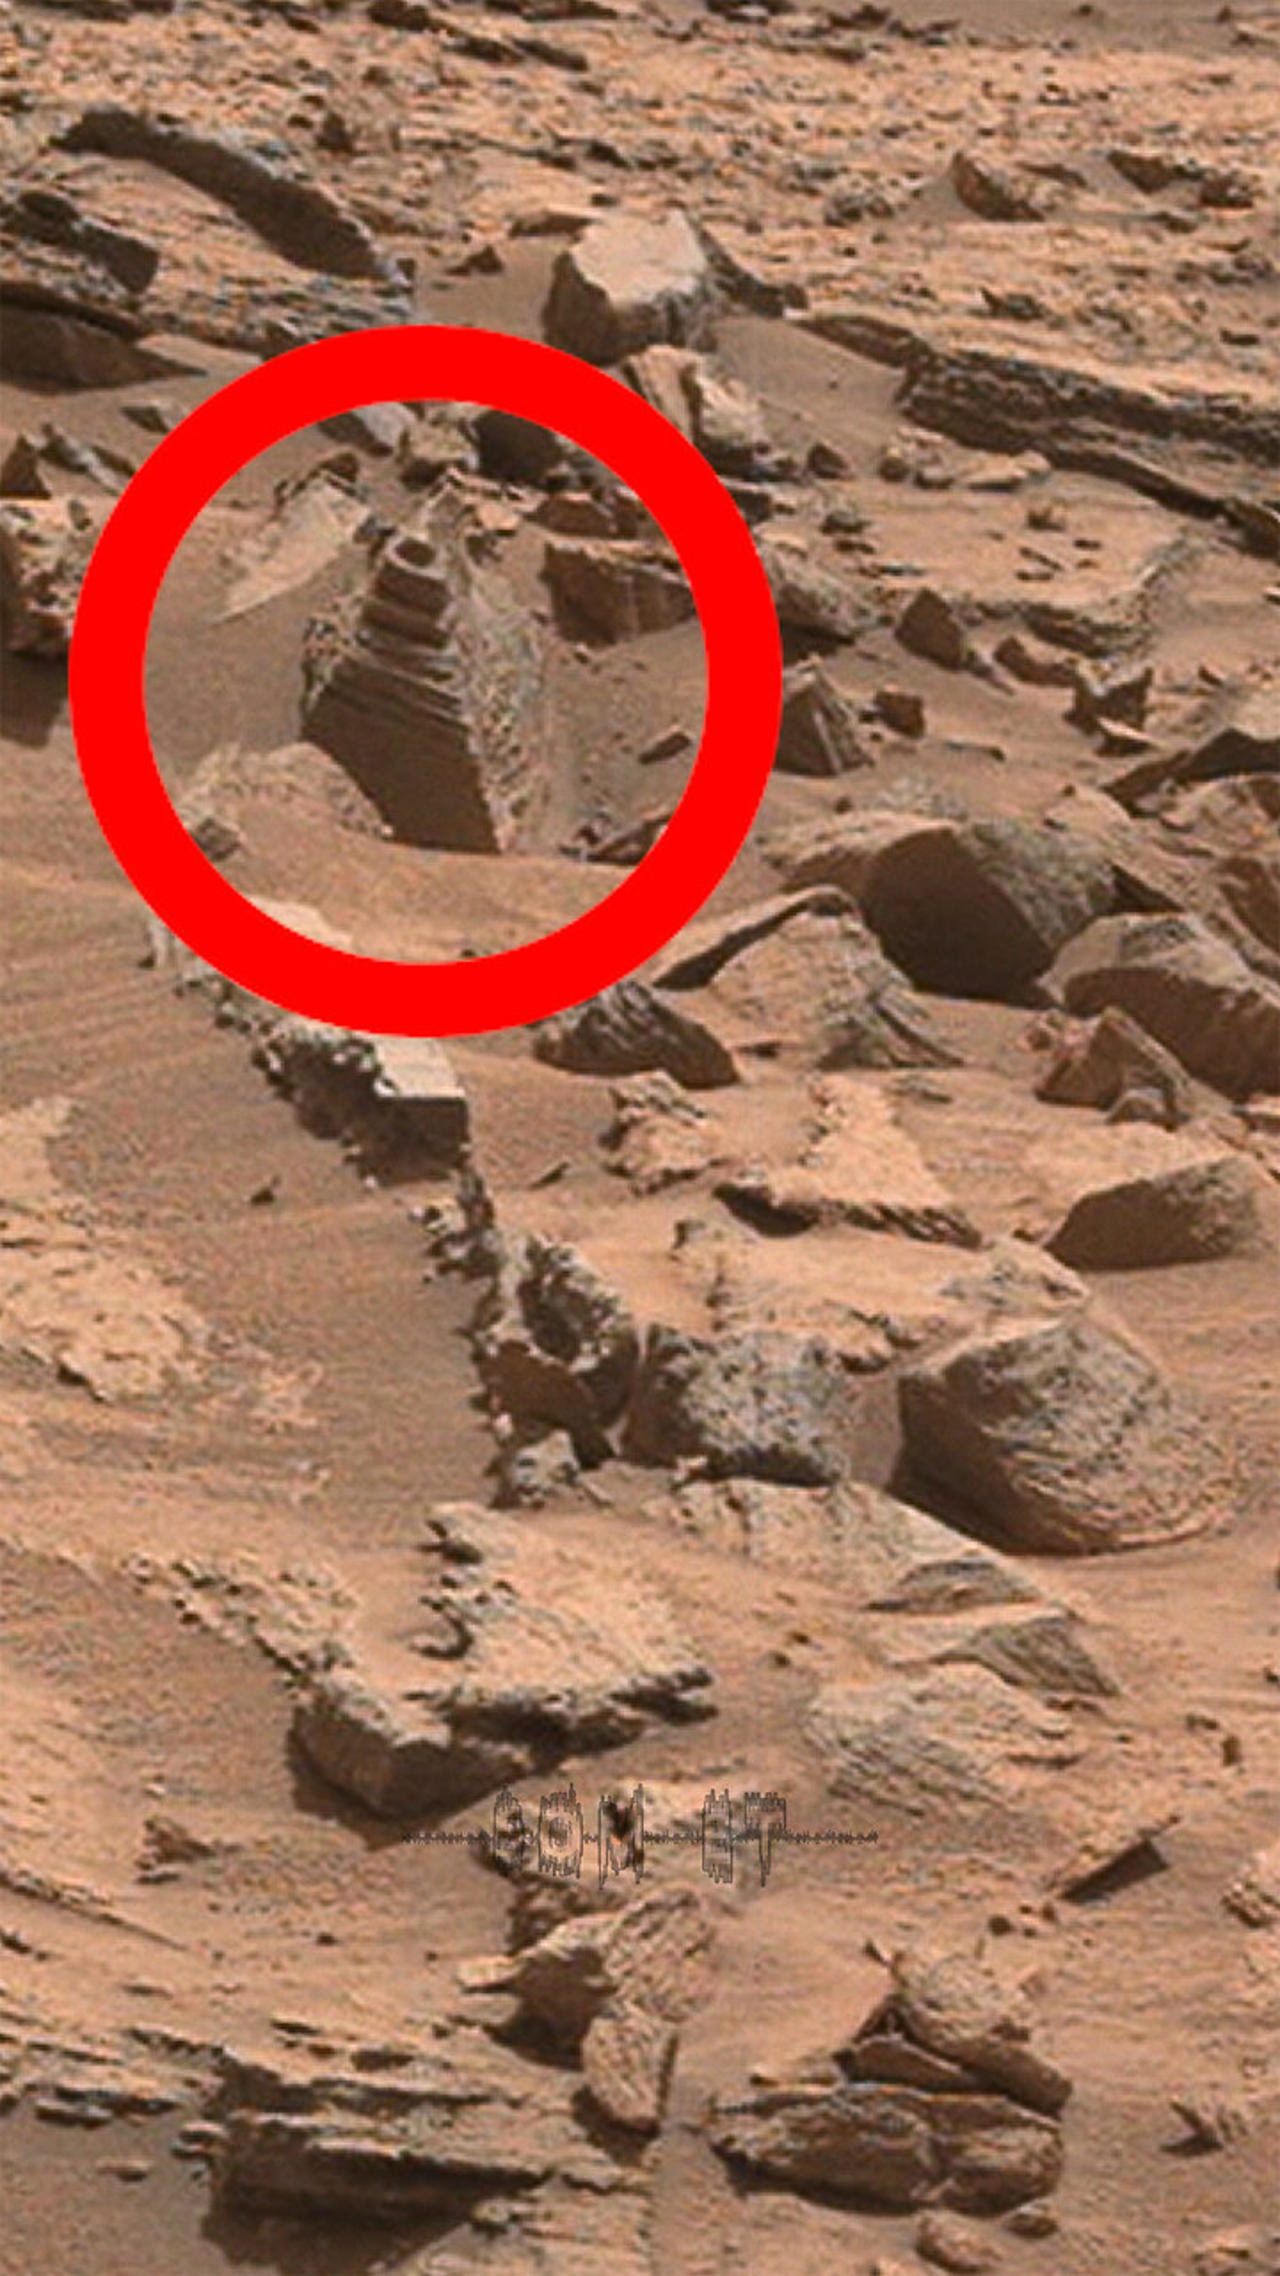 Som ET - 58 - Mars - Curiosity Sol 1373